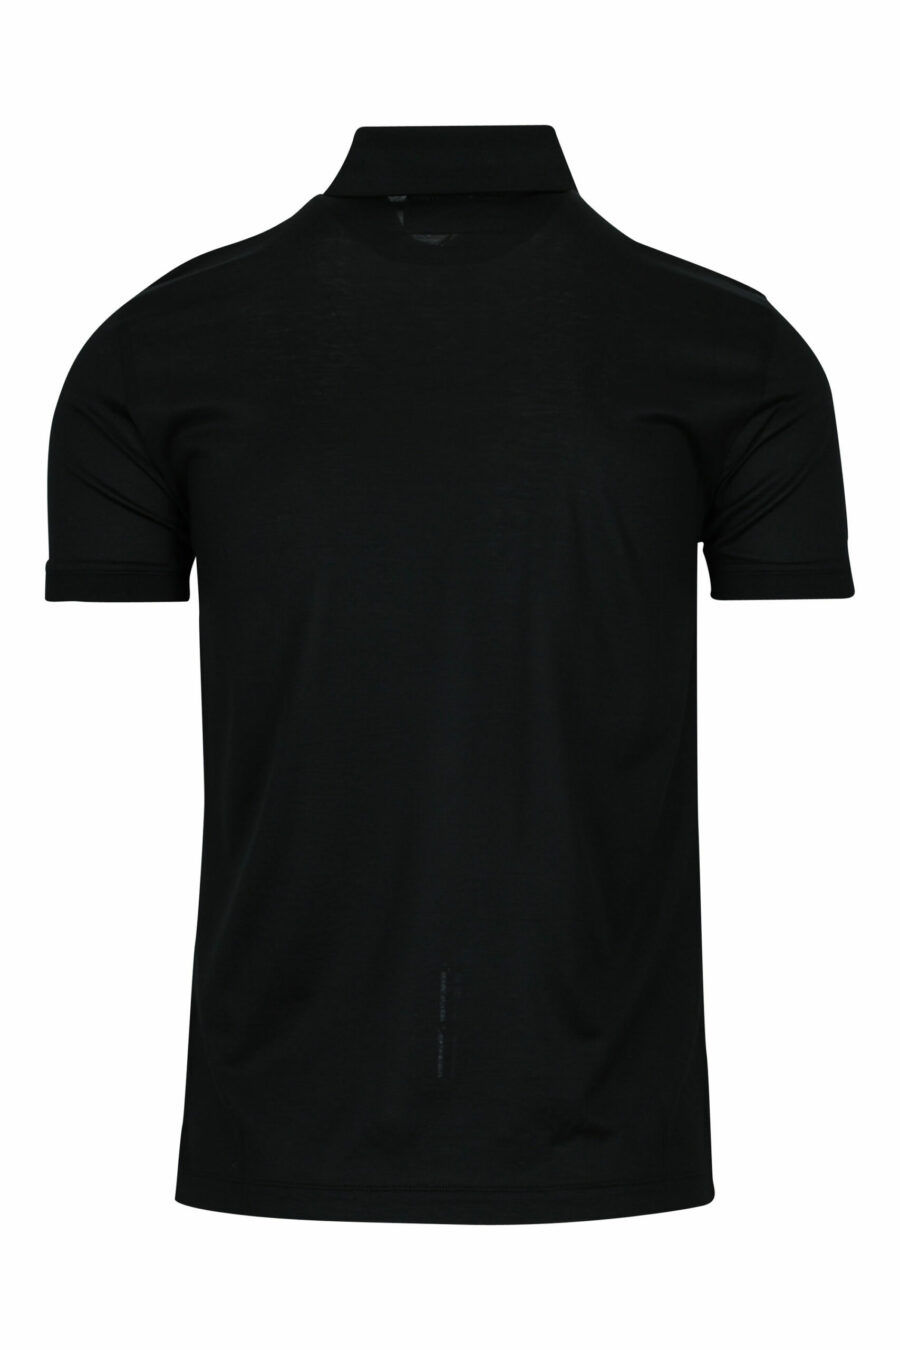 Schwarzes gestricktes Poloshirt mit Adler Mini-Logo - 8059516405610 1 skaliert